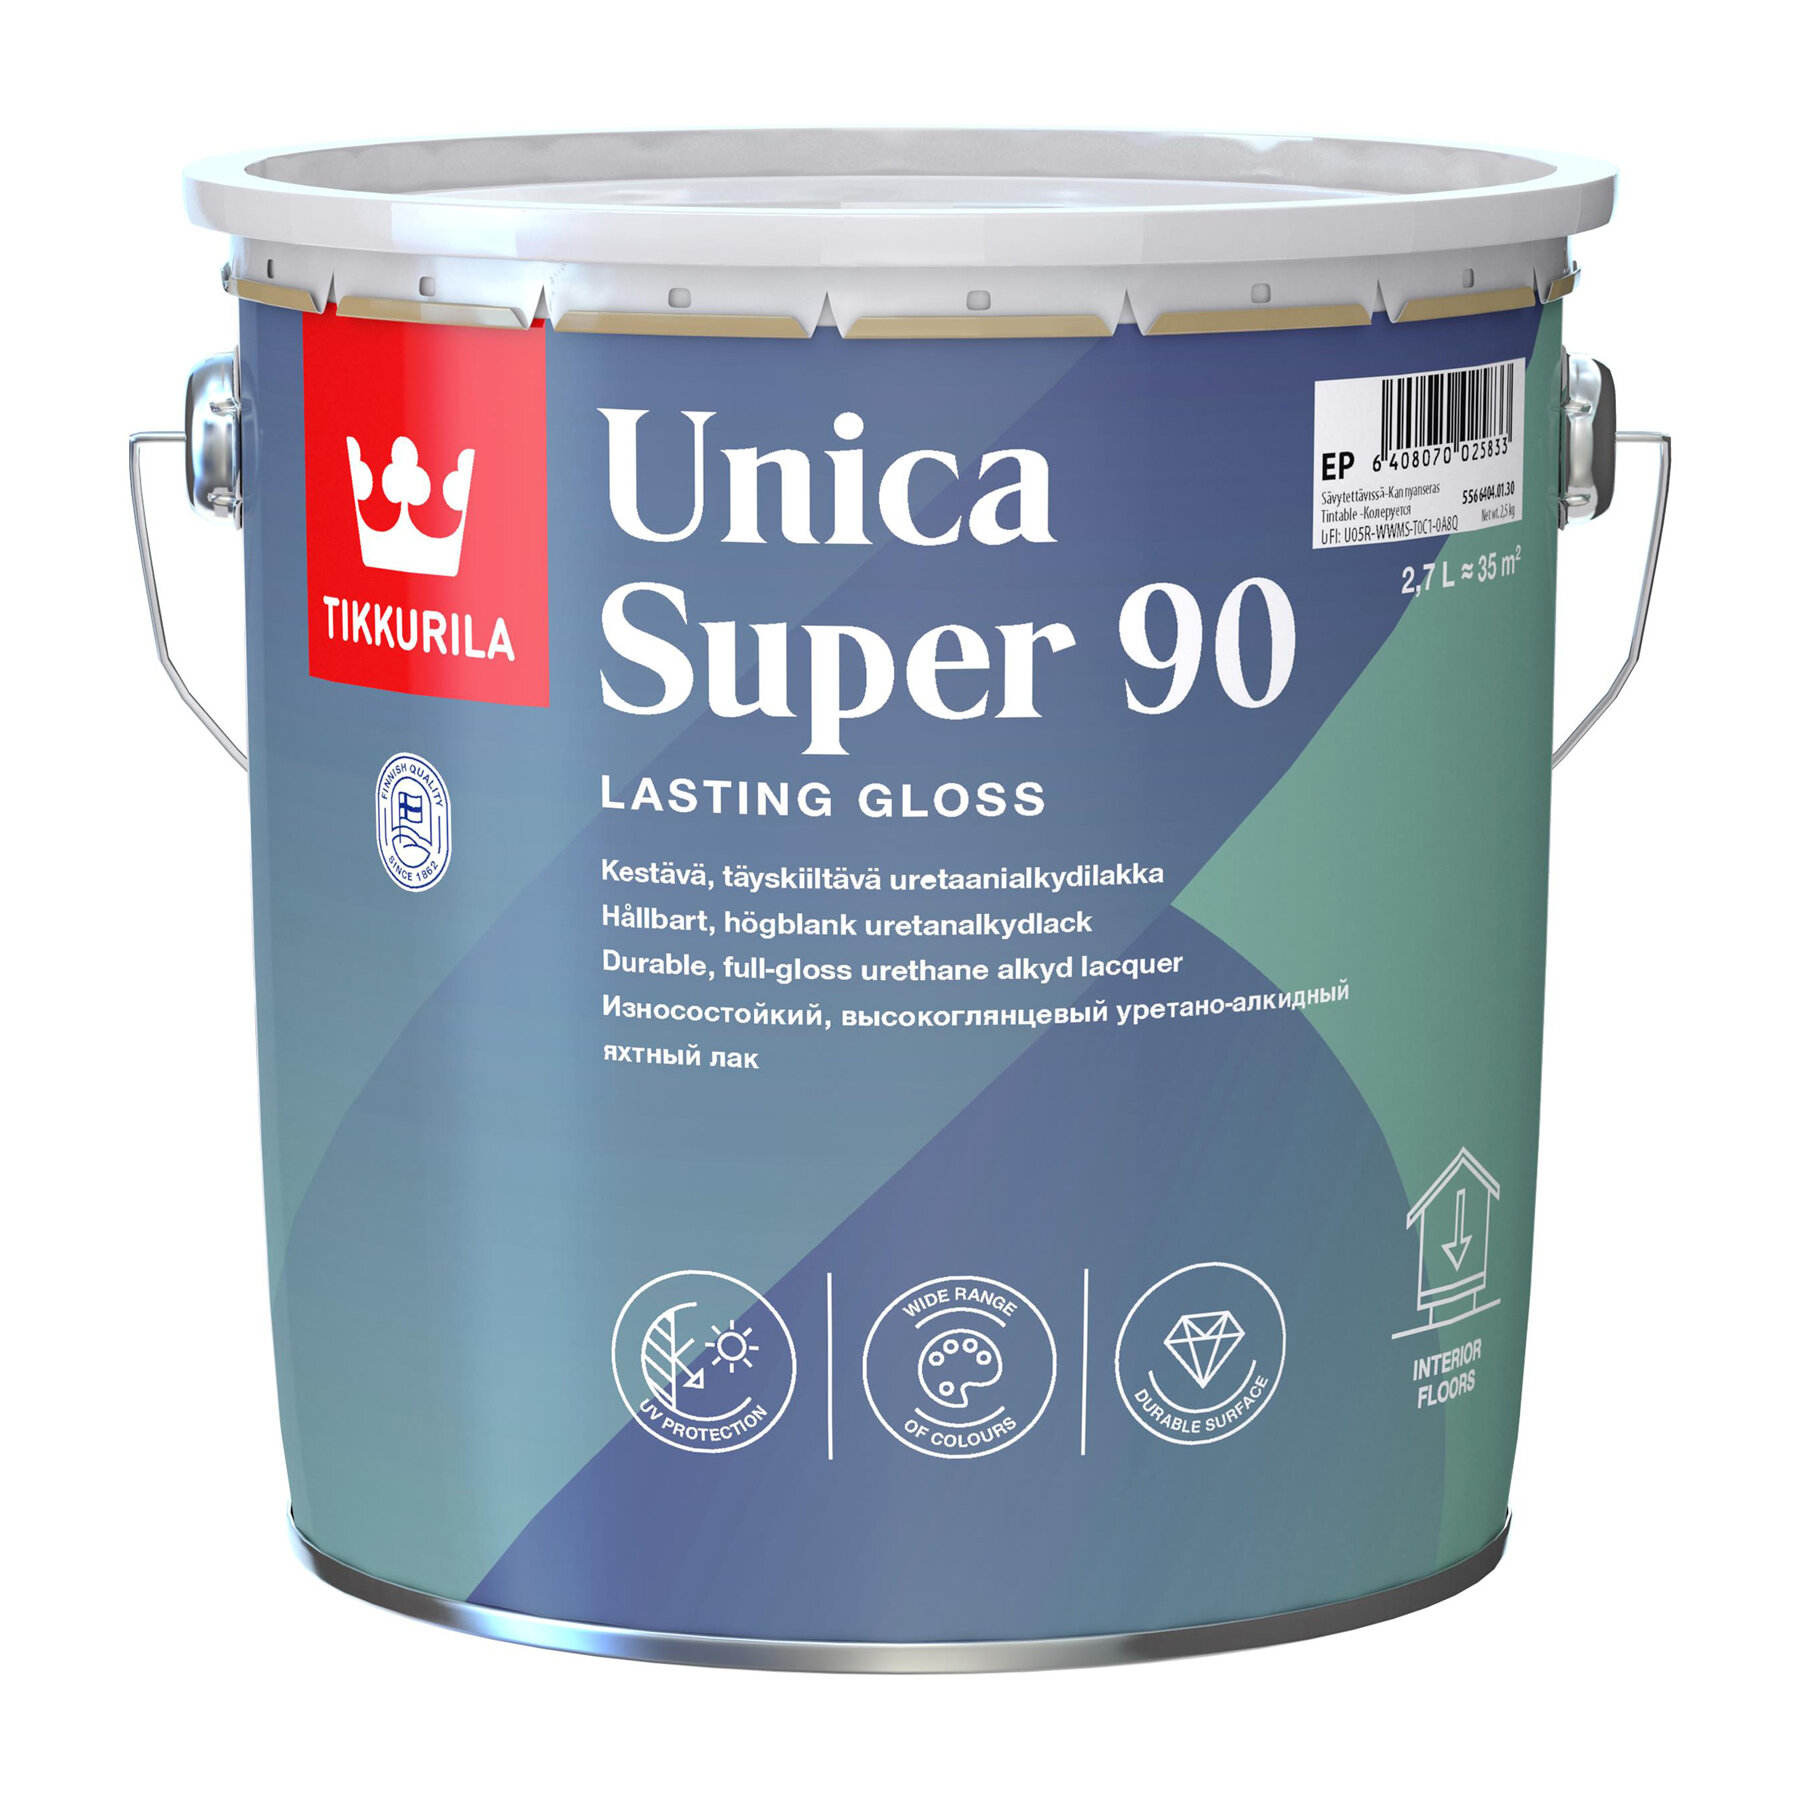 Tikkurila Unica Super 90,Износостойкий уретано-алкидный яхтный лак,2,7л